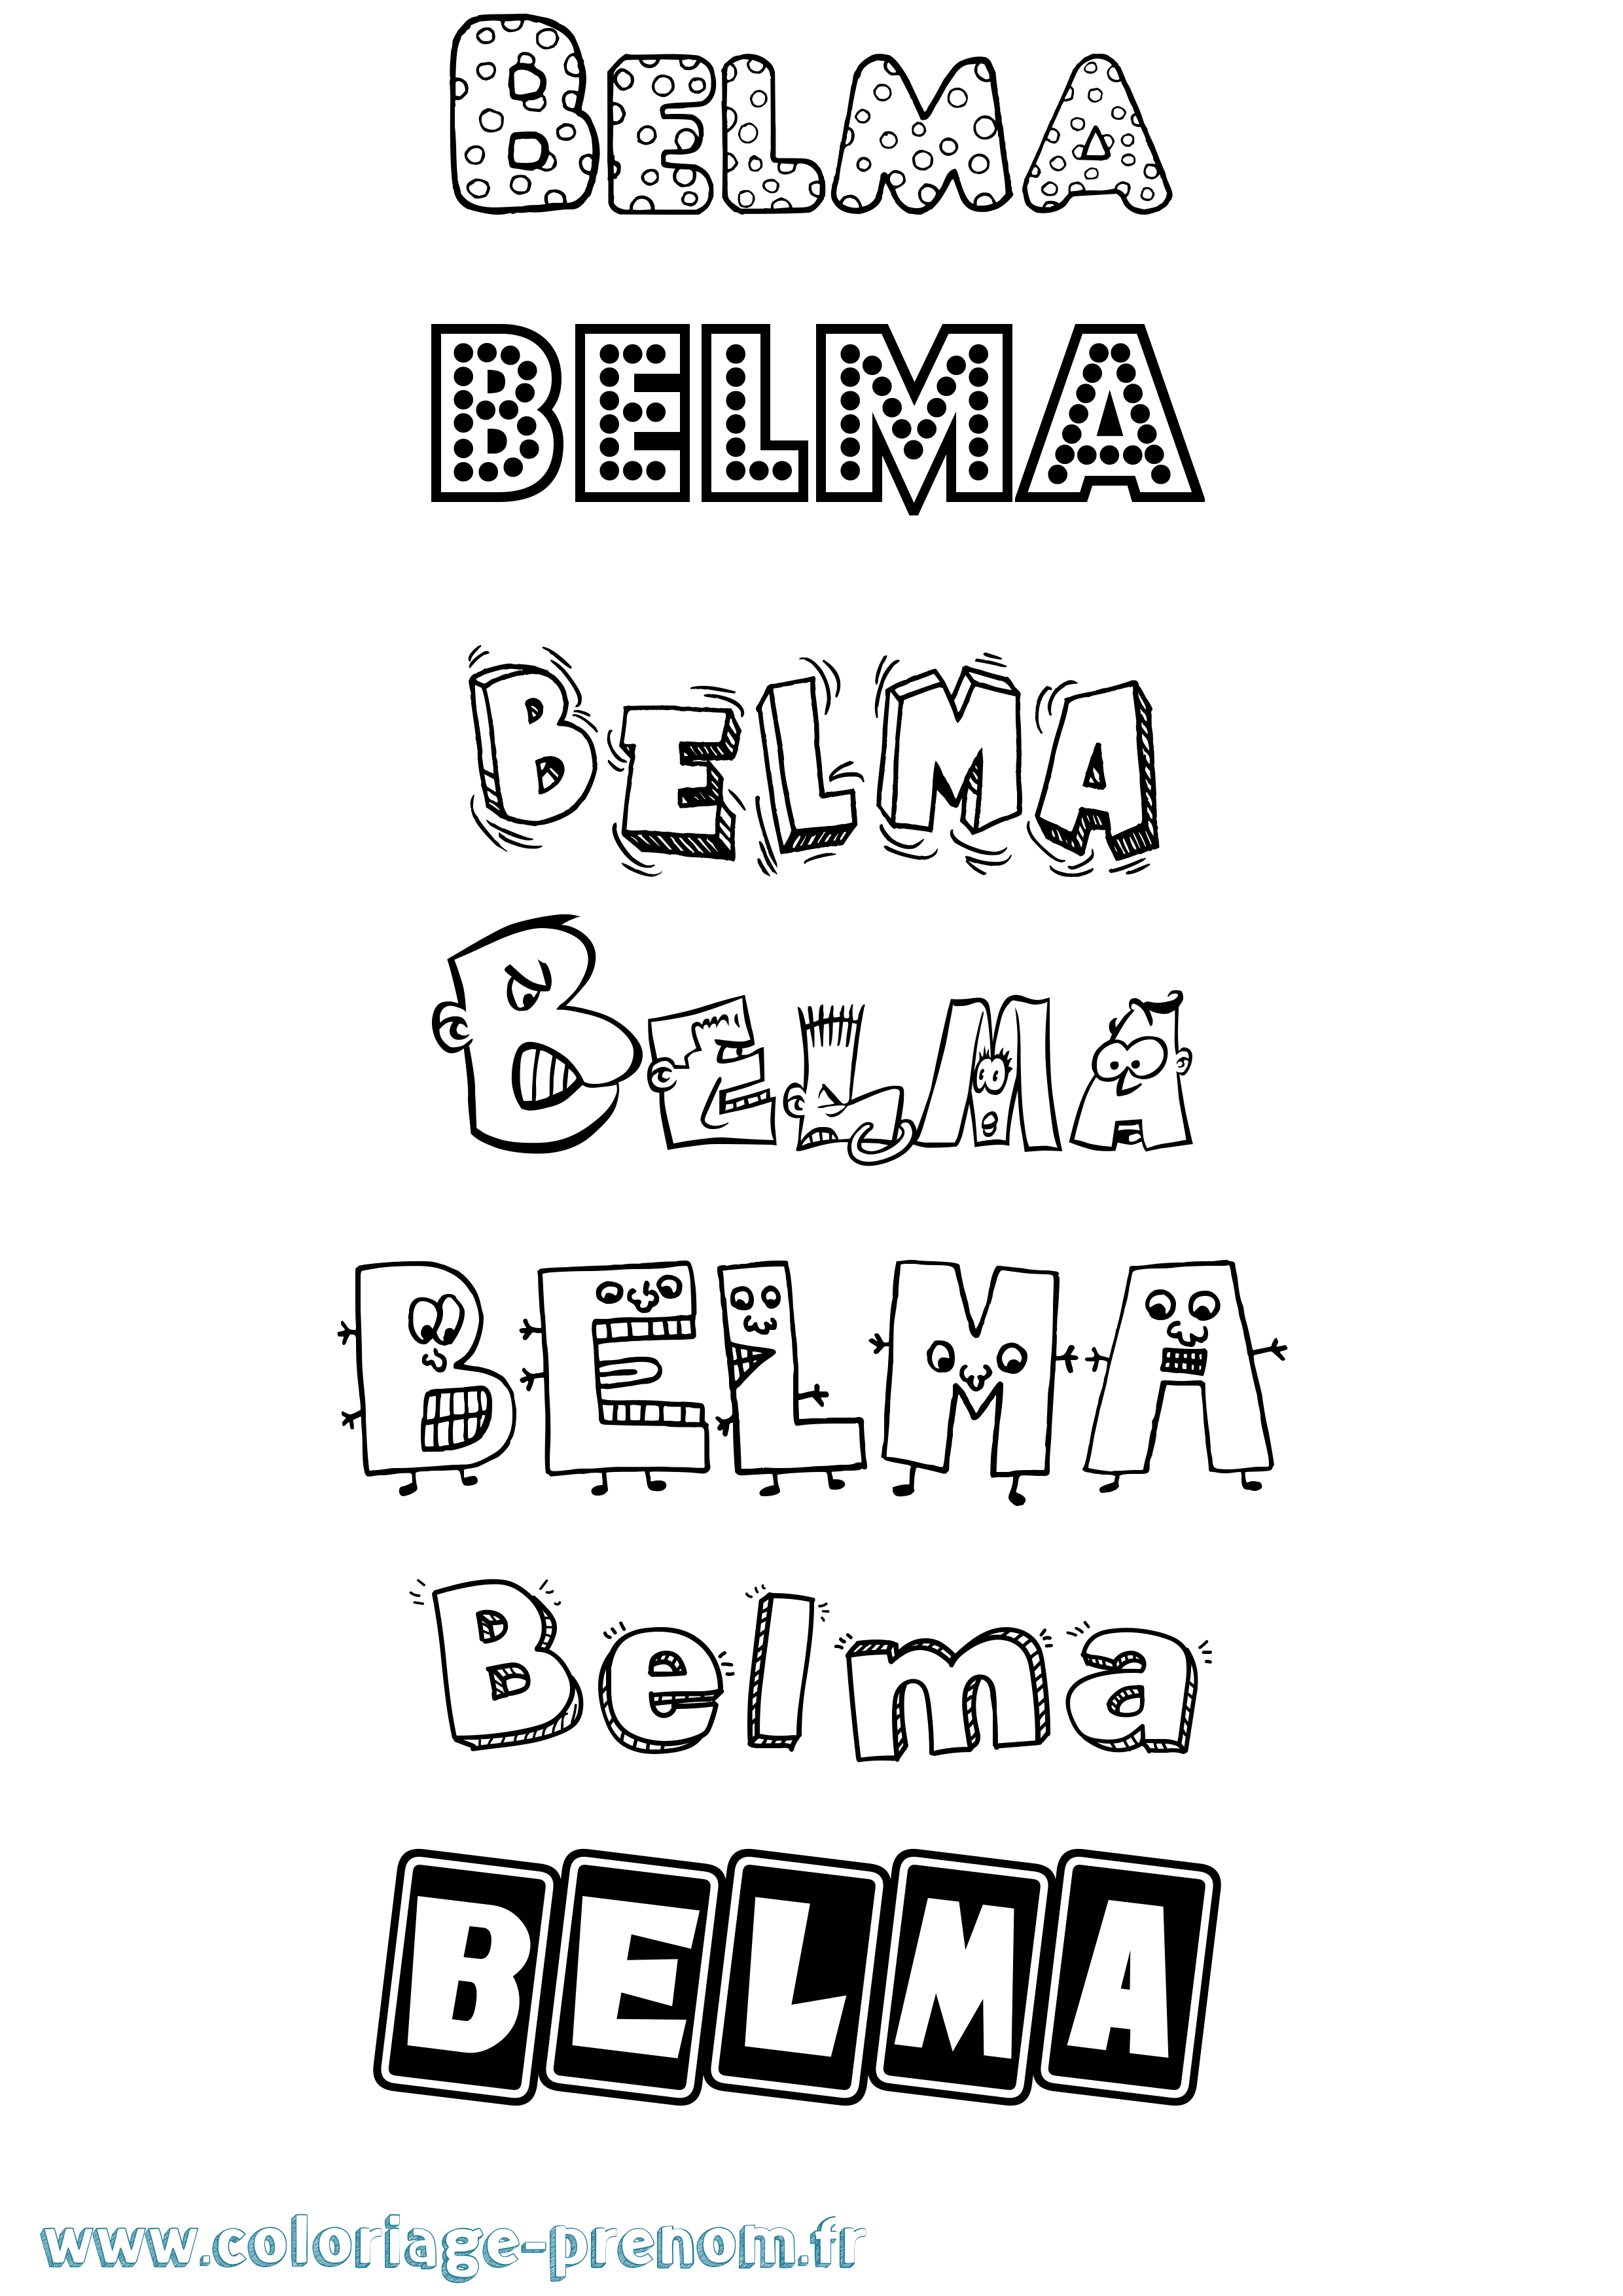 Coloriage prénom Belma Fun